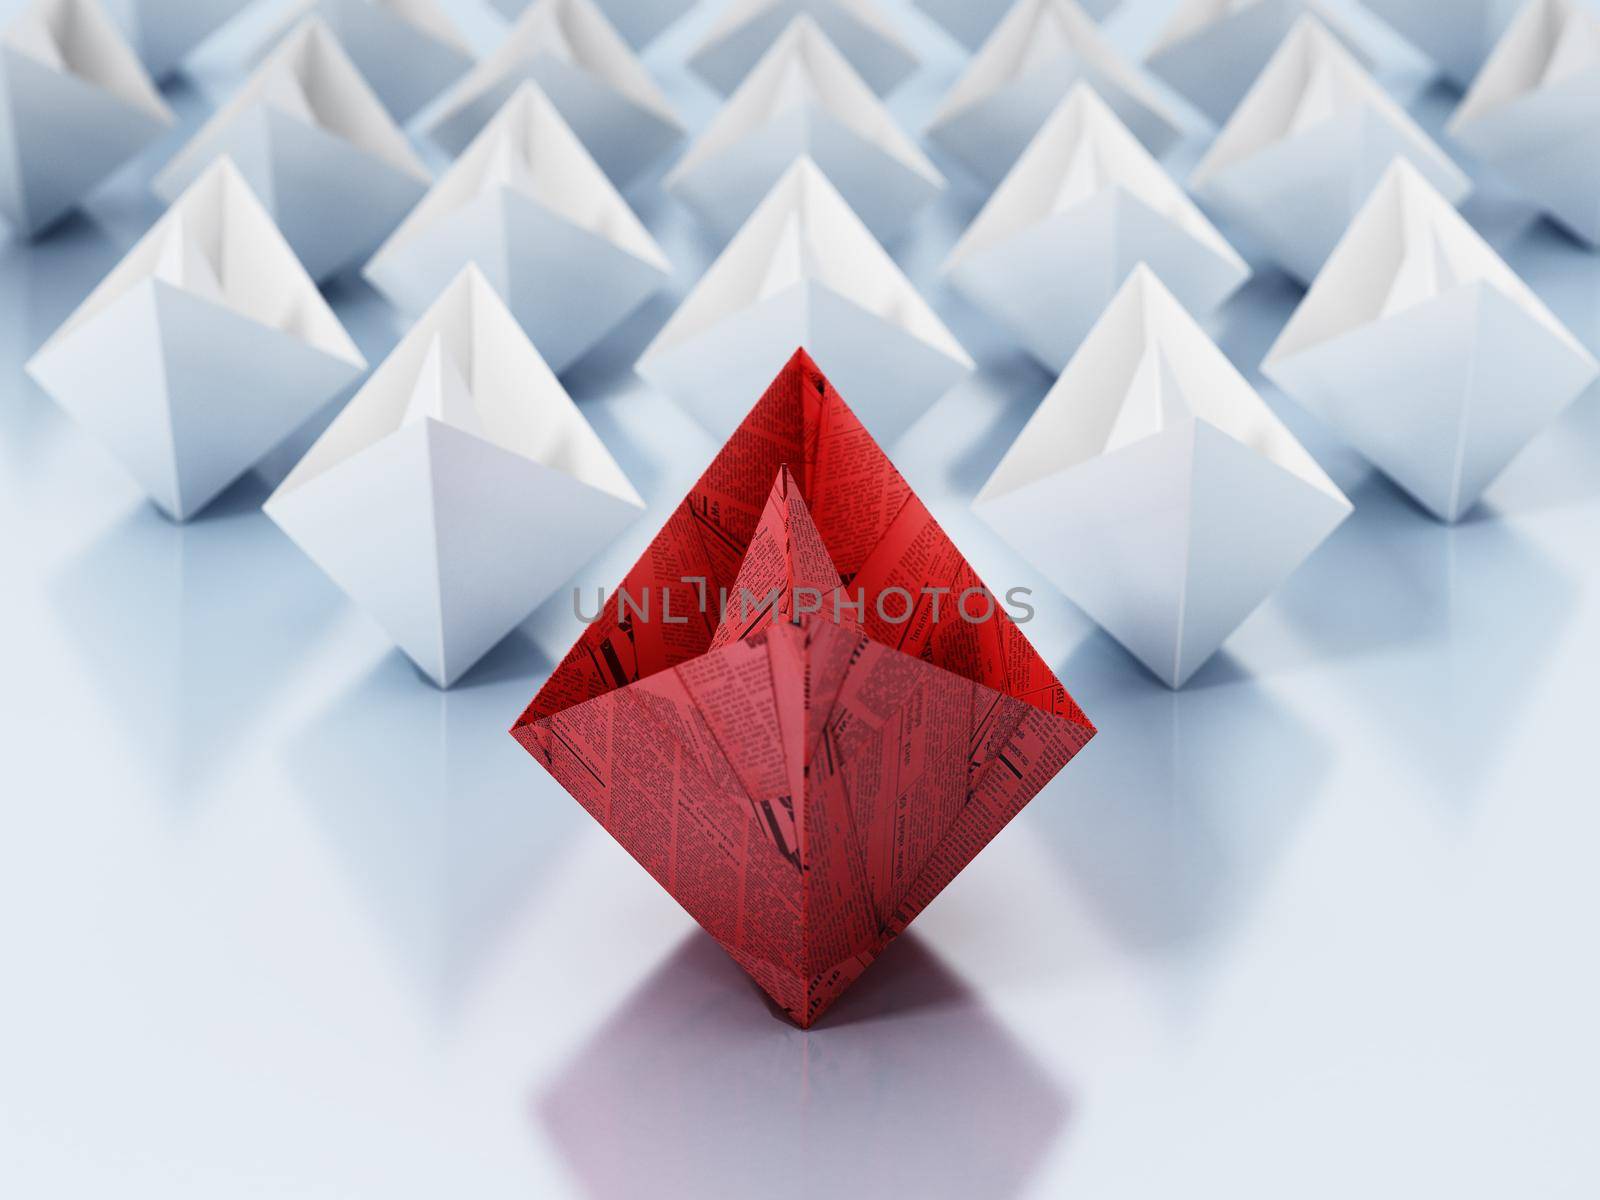 Red paper ship leading white regular paper ships. 3D illustration.